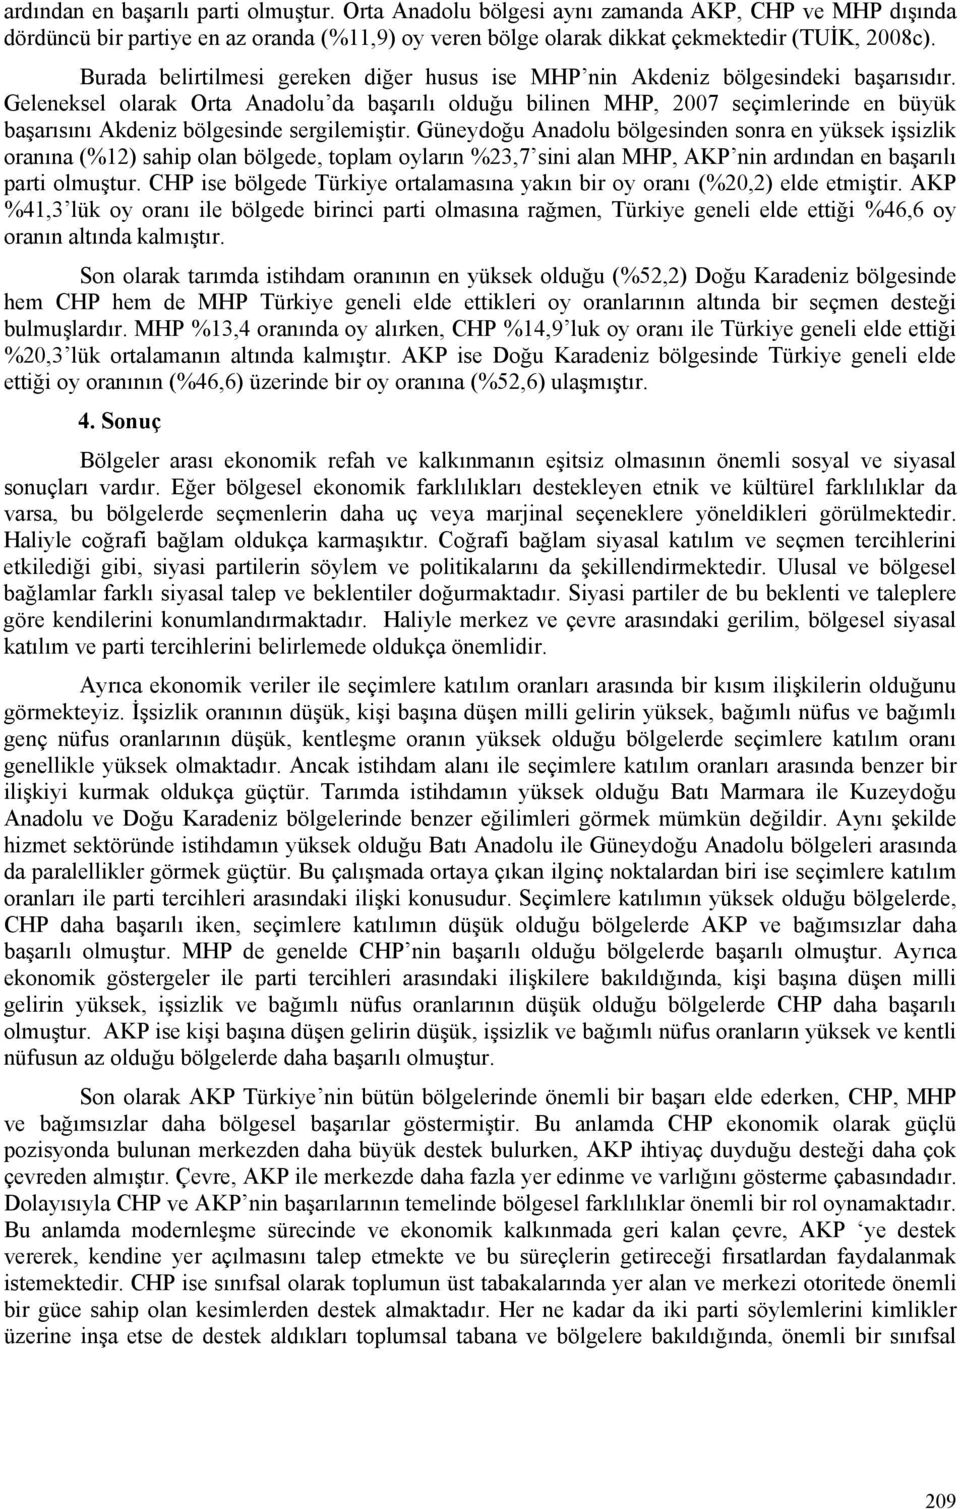 Geleneksel olarak Orta Anadolu da başarılı olduğu bilinen MHP, 2007 seçimlerinde en büyük başarısını Akdeniz bölgesinde sergilemiştir.